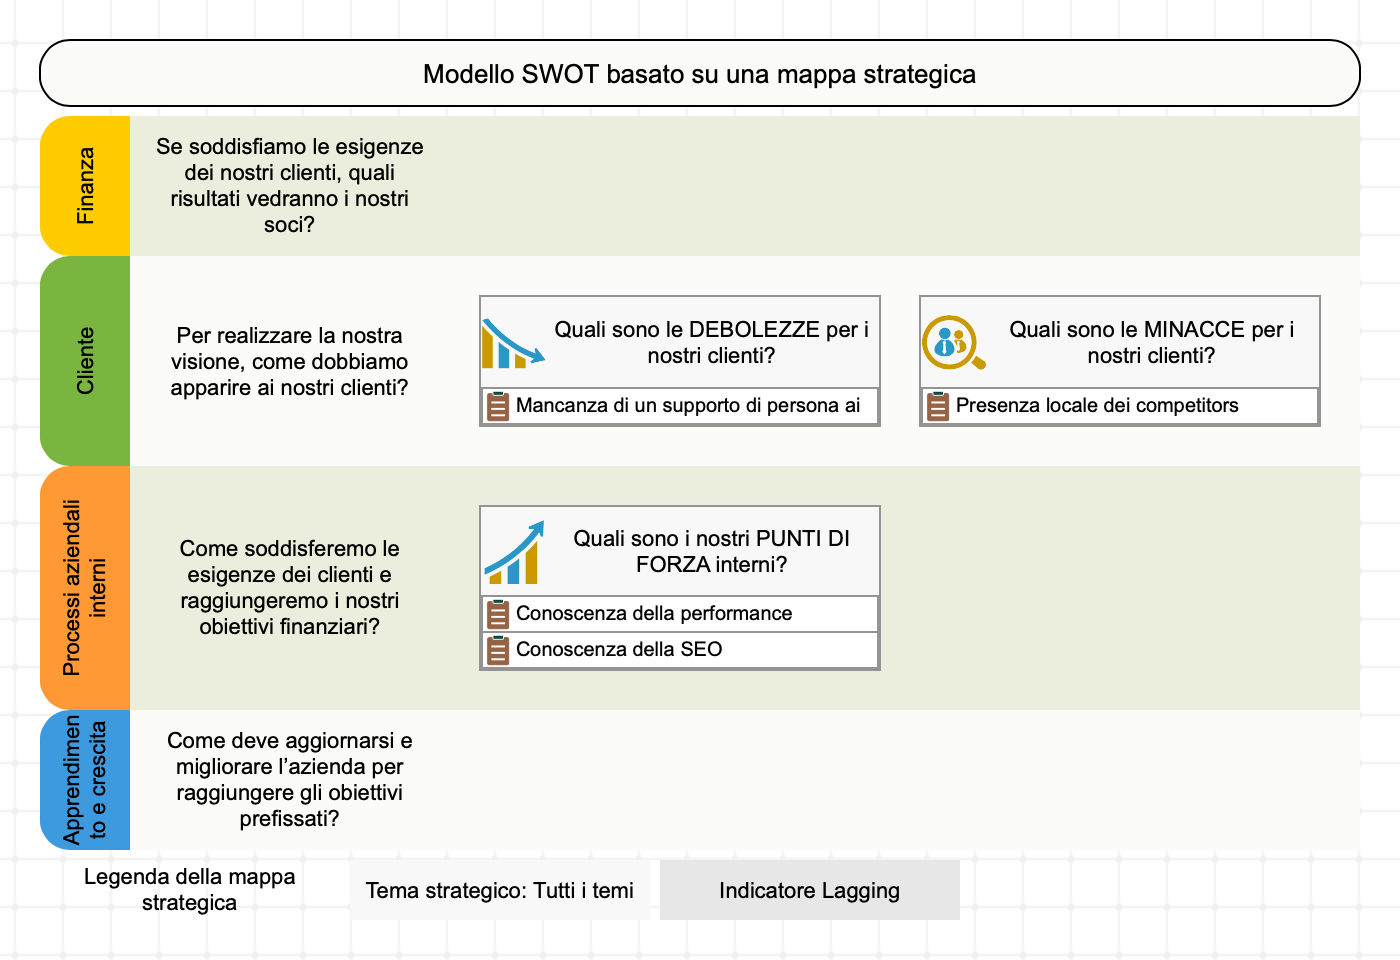 Esempio dell'utilizzo del modello SWOT+S